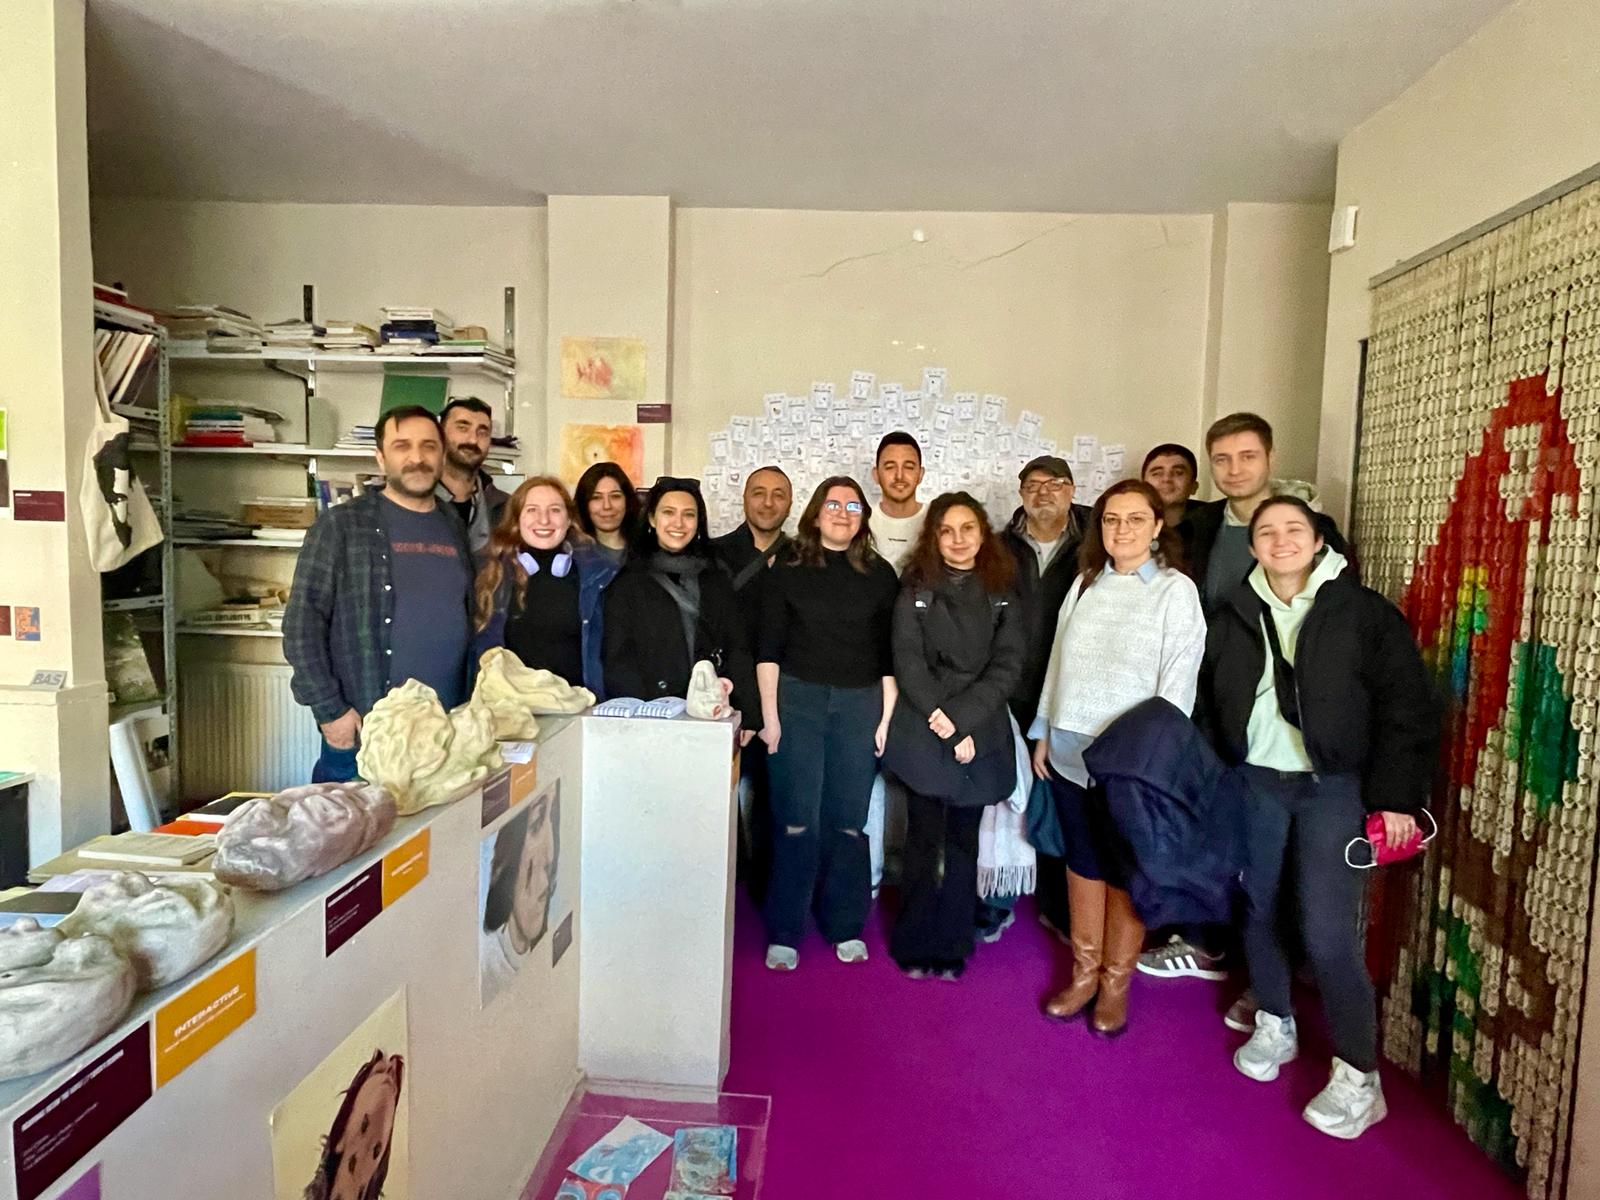 Çevre Mühendisleri Odası İstanbul Şubesi Üyeleri, BAS Karaköy'de Düzenlenen "DIALOGUES" Sergisini Ziyaret Etti